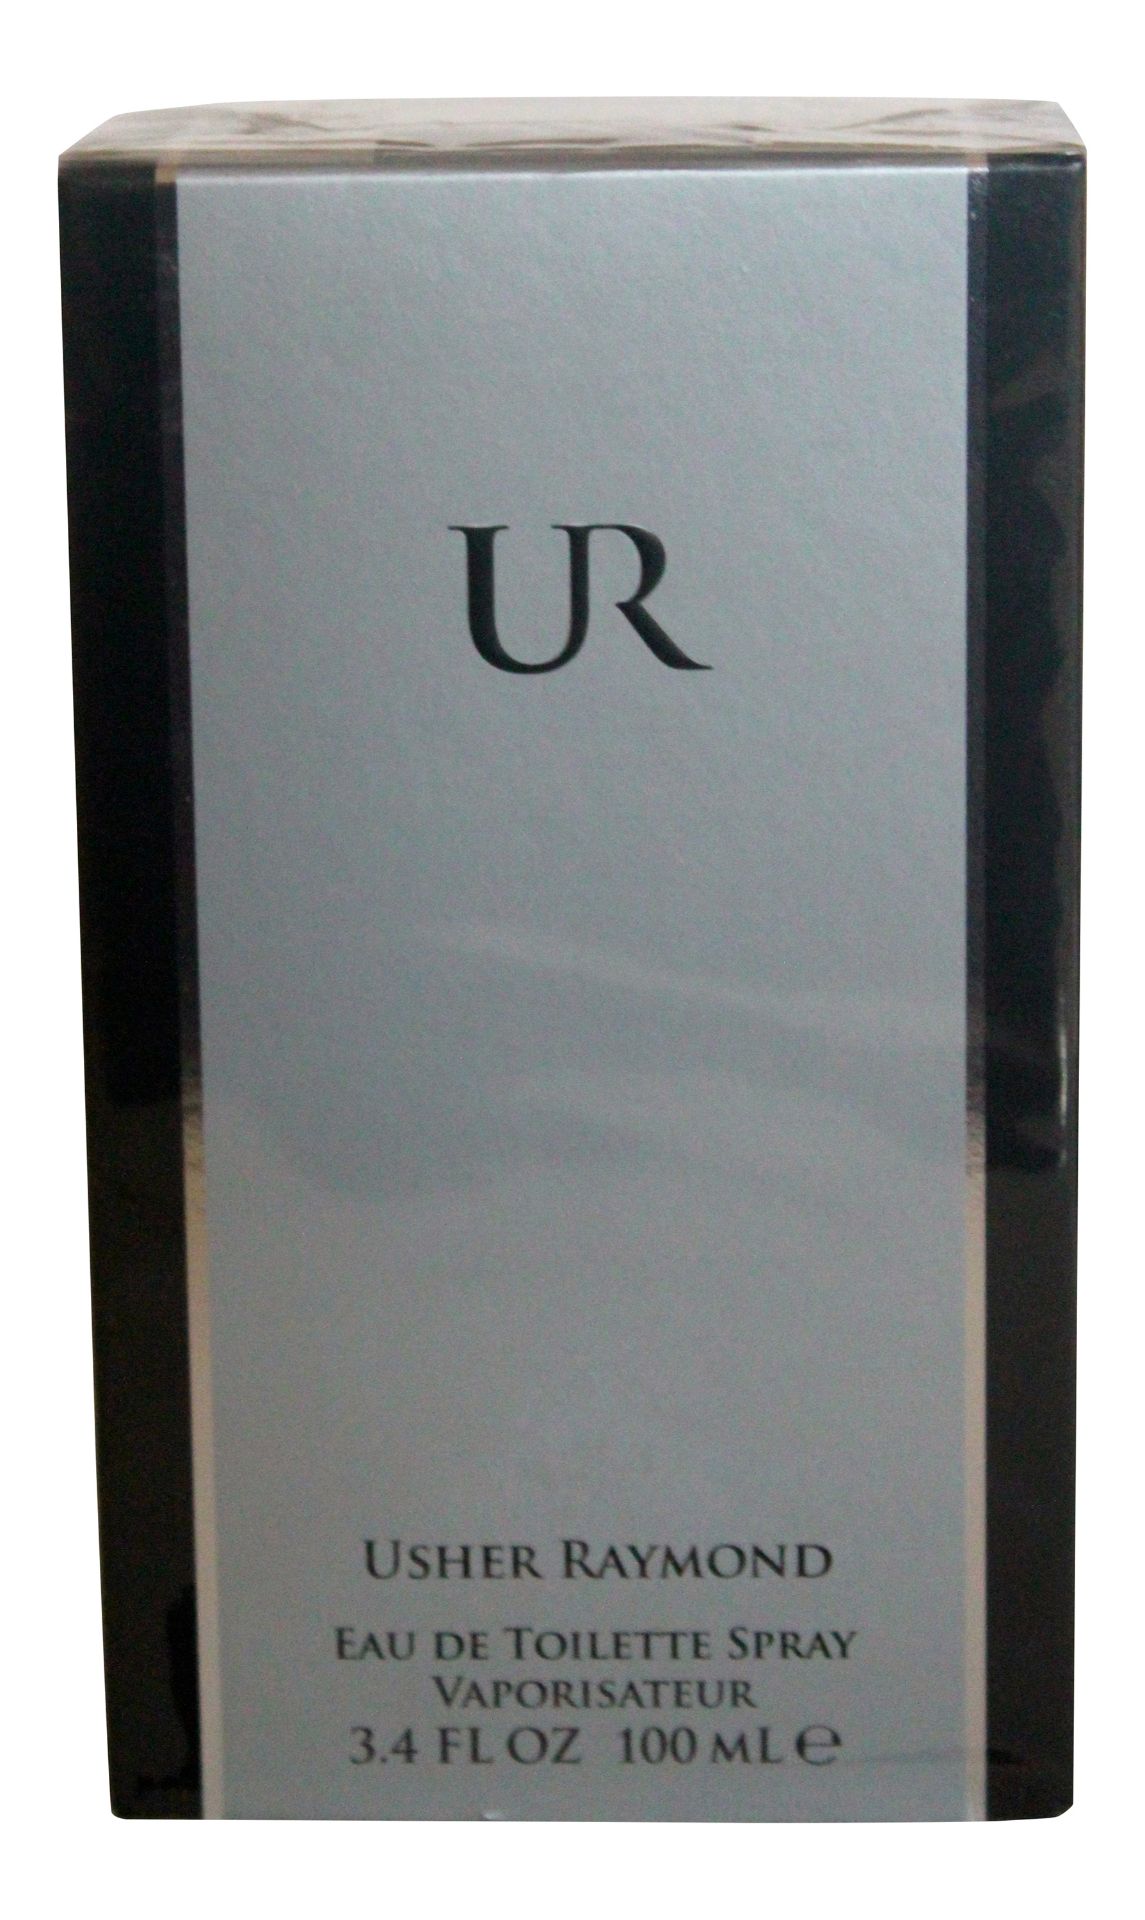 Usher UR 100ml EDT Spray for Men x 1 Unit - Image 3 of 3